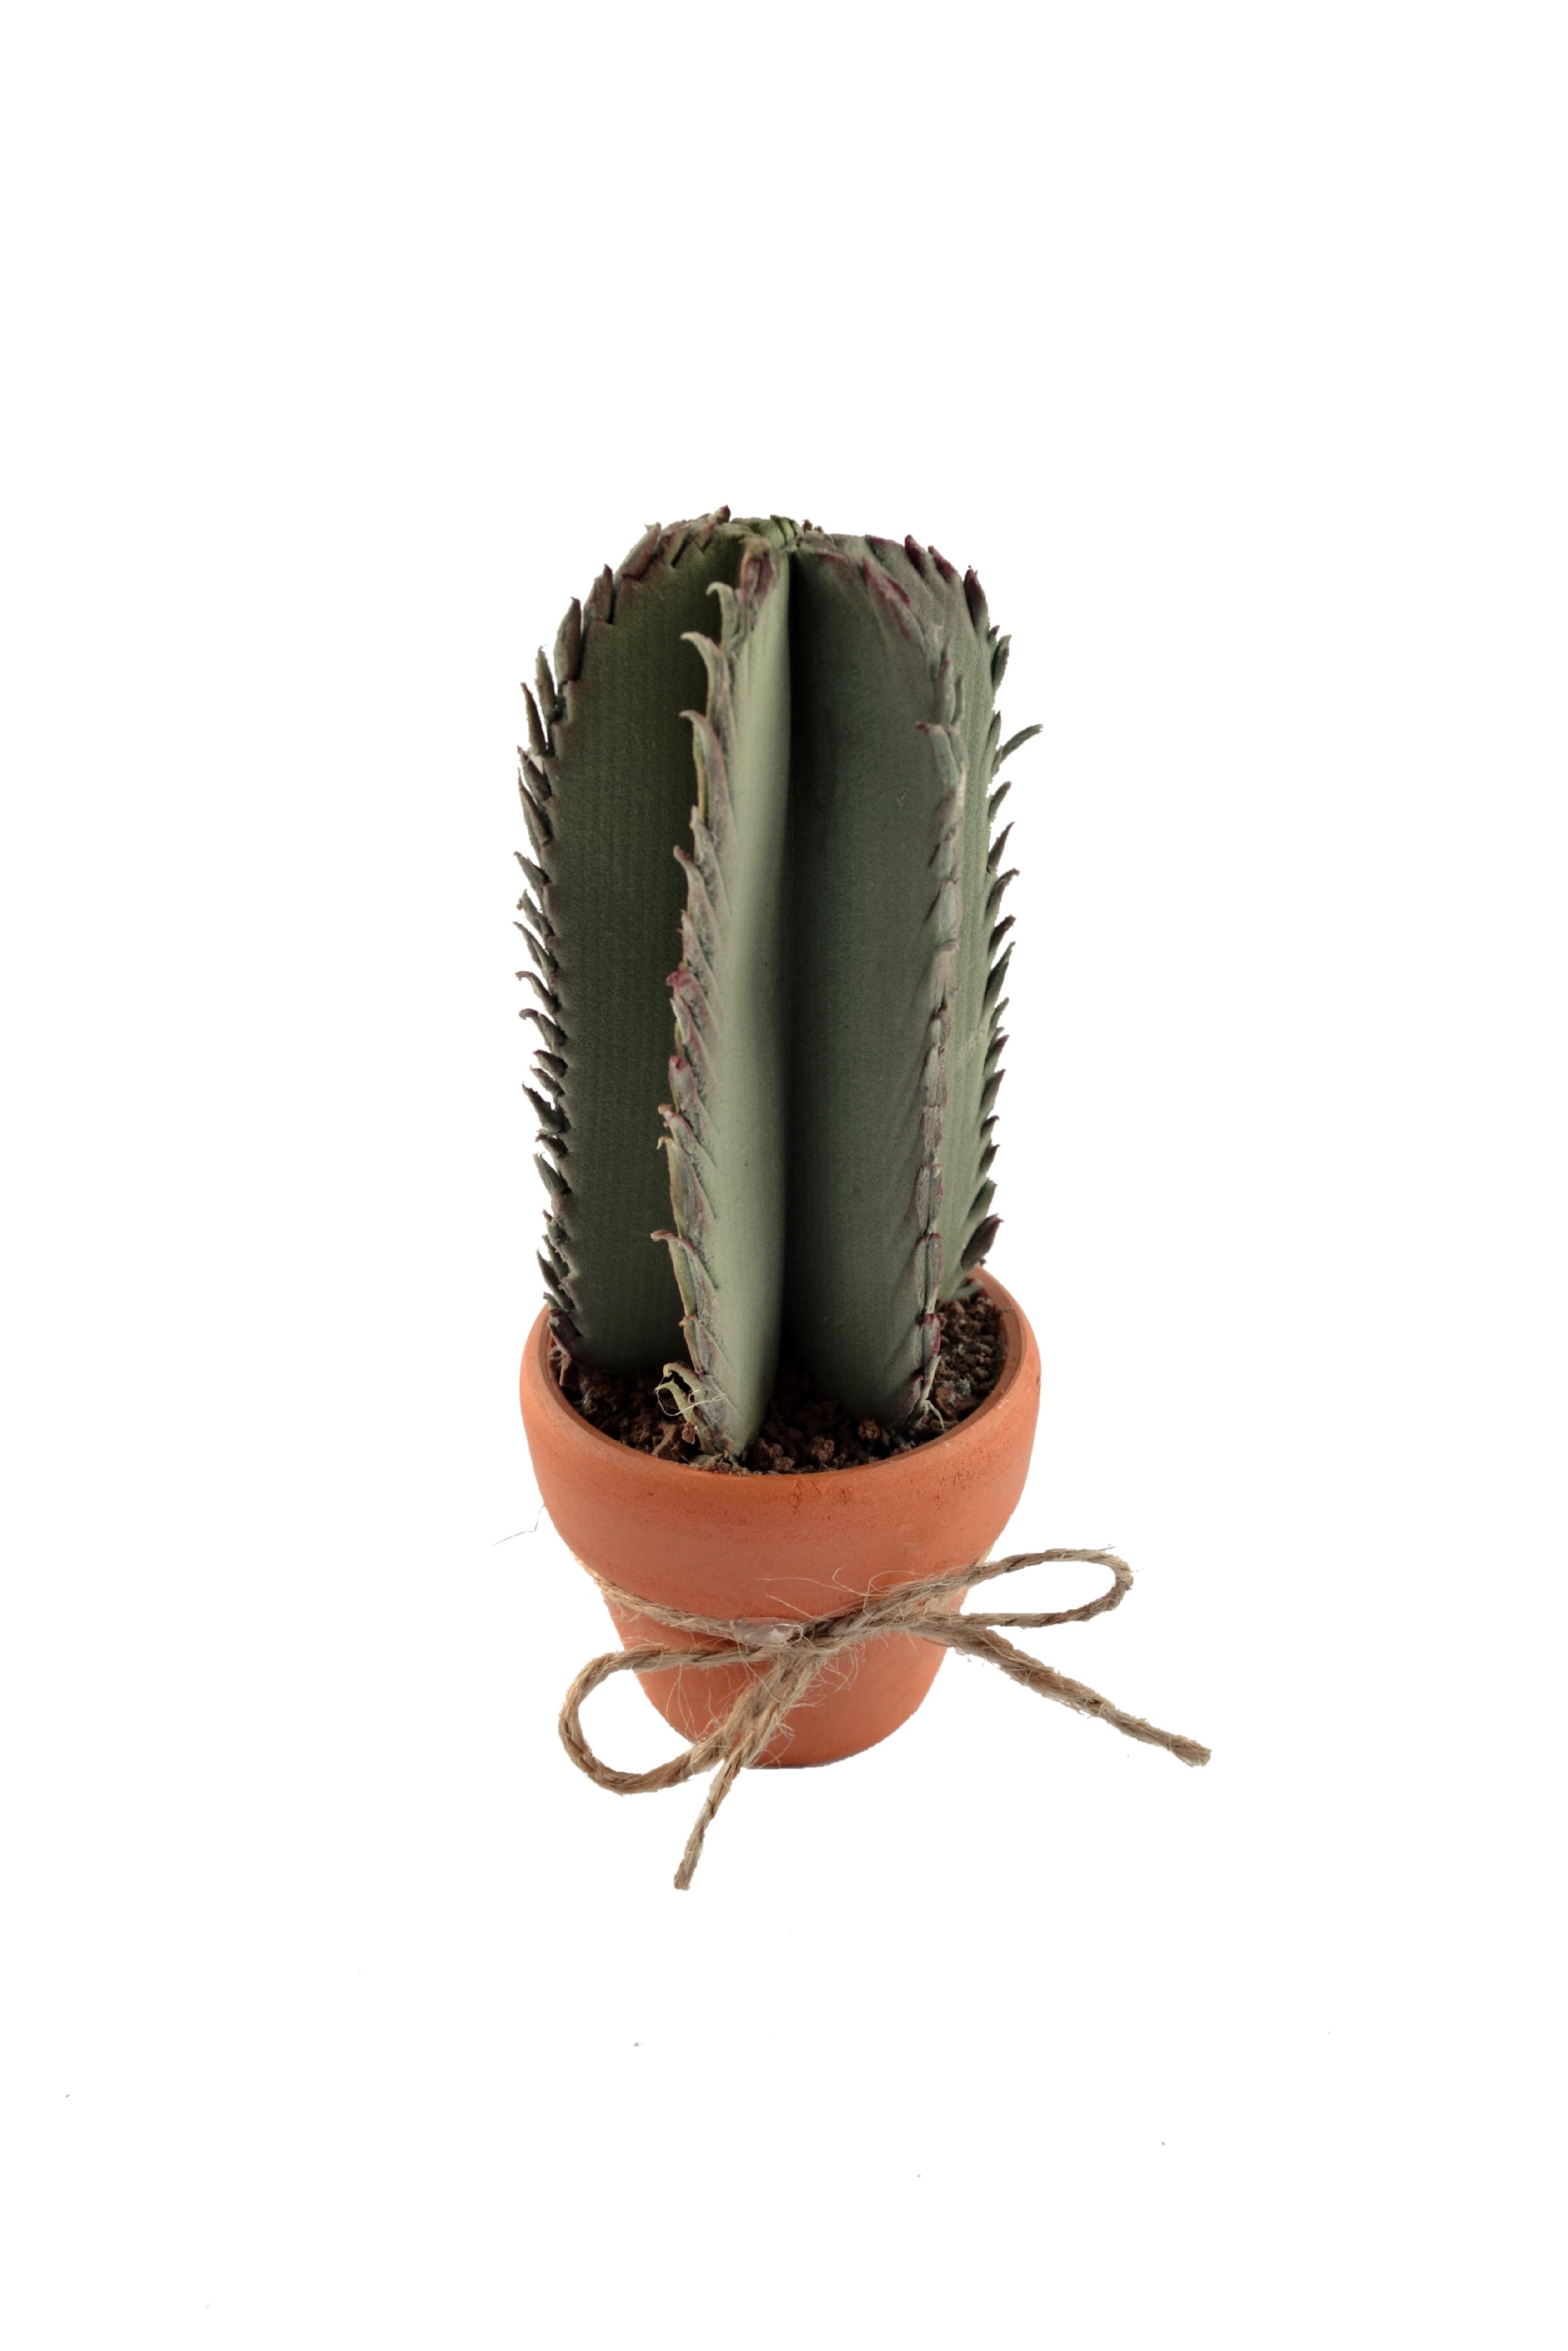 PG040 - Cactus